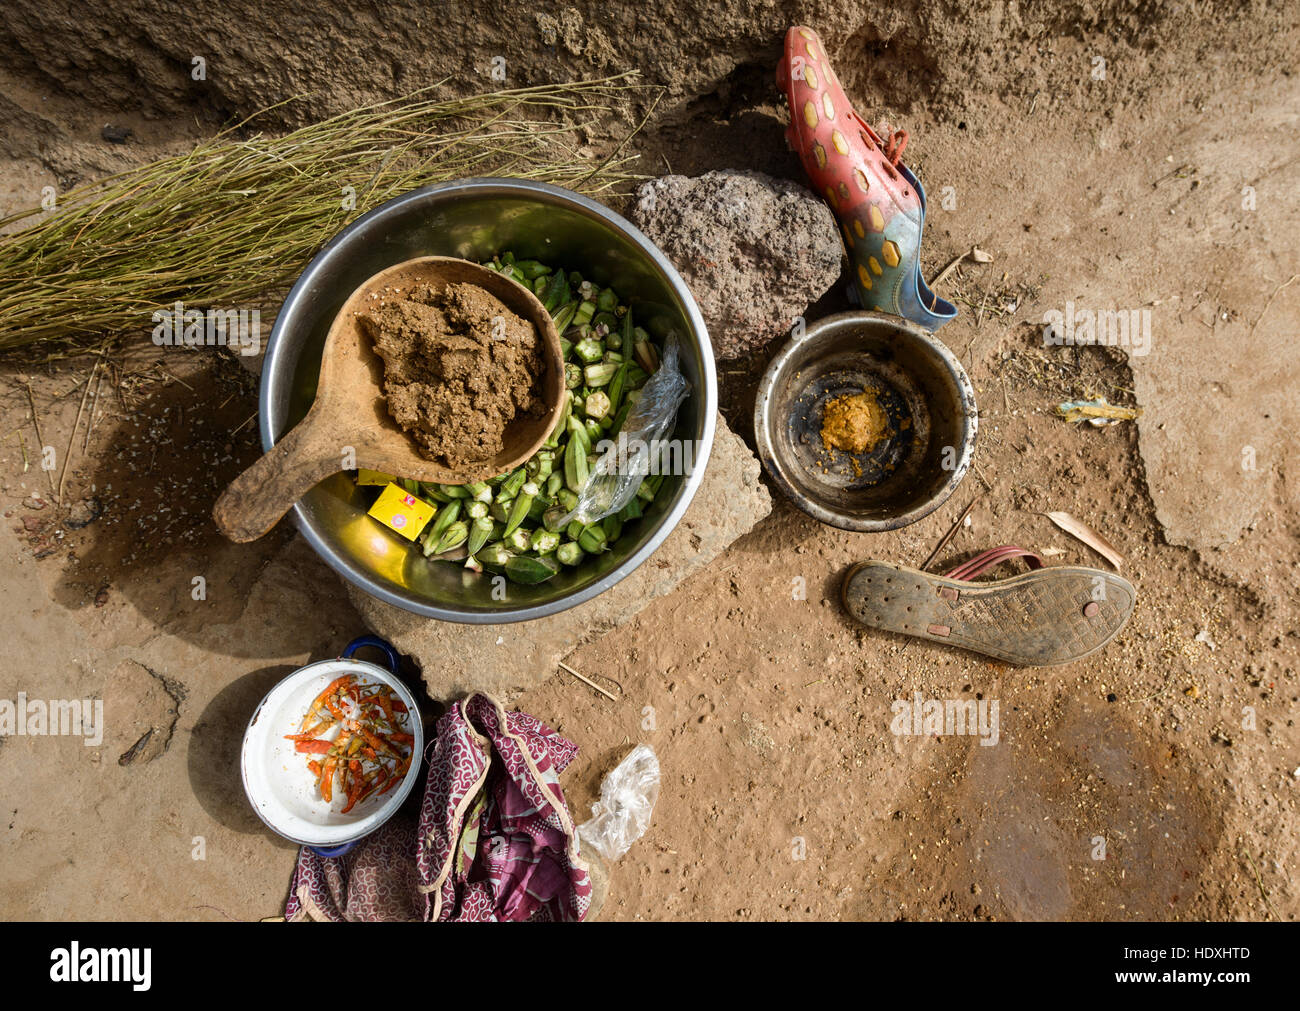 La vita nei villaggi del nord del Togo Foto Stock